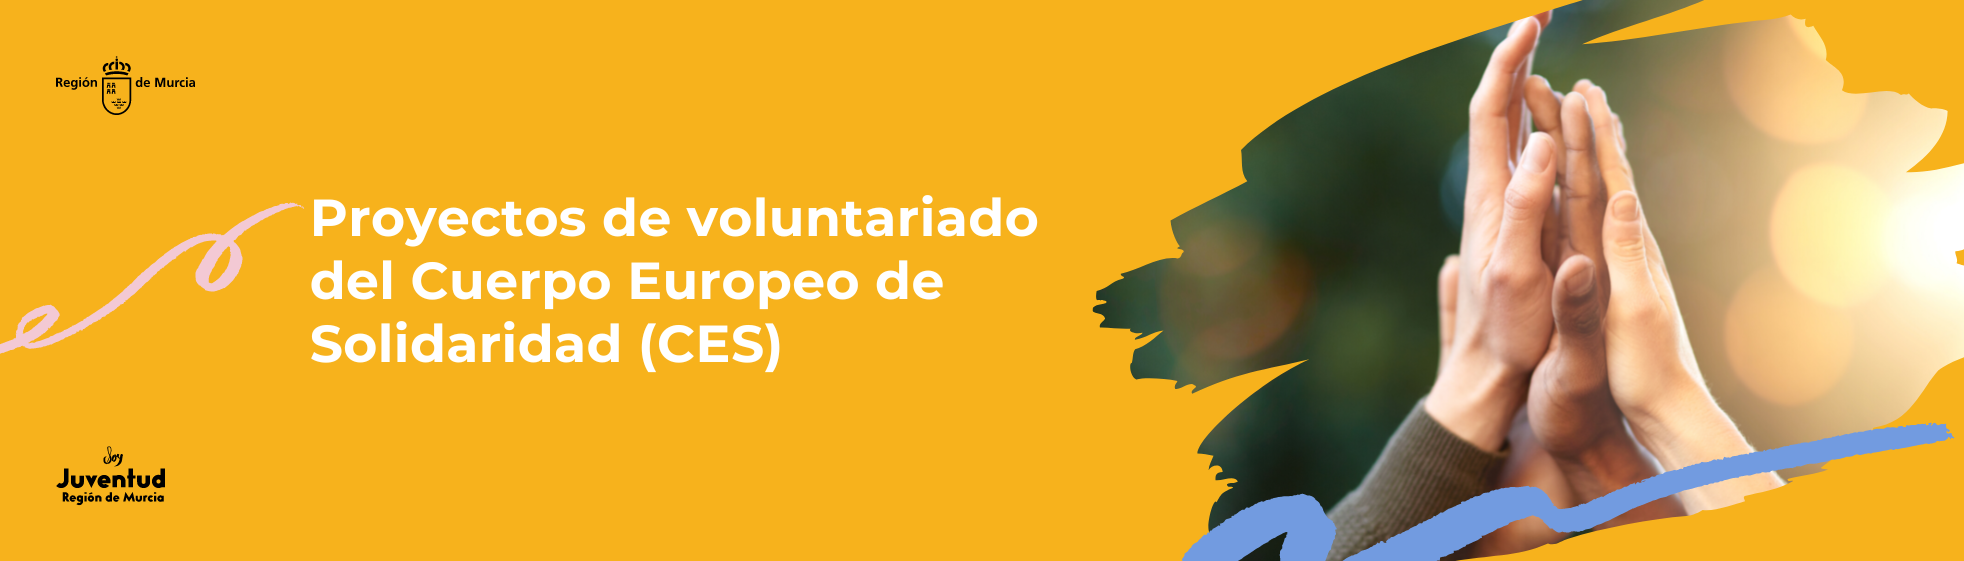 Proyectos de voluntariado del Cuerpo Europeo de Solidaridad (CES)